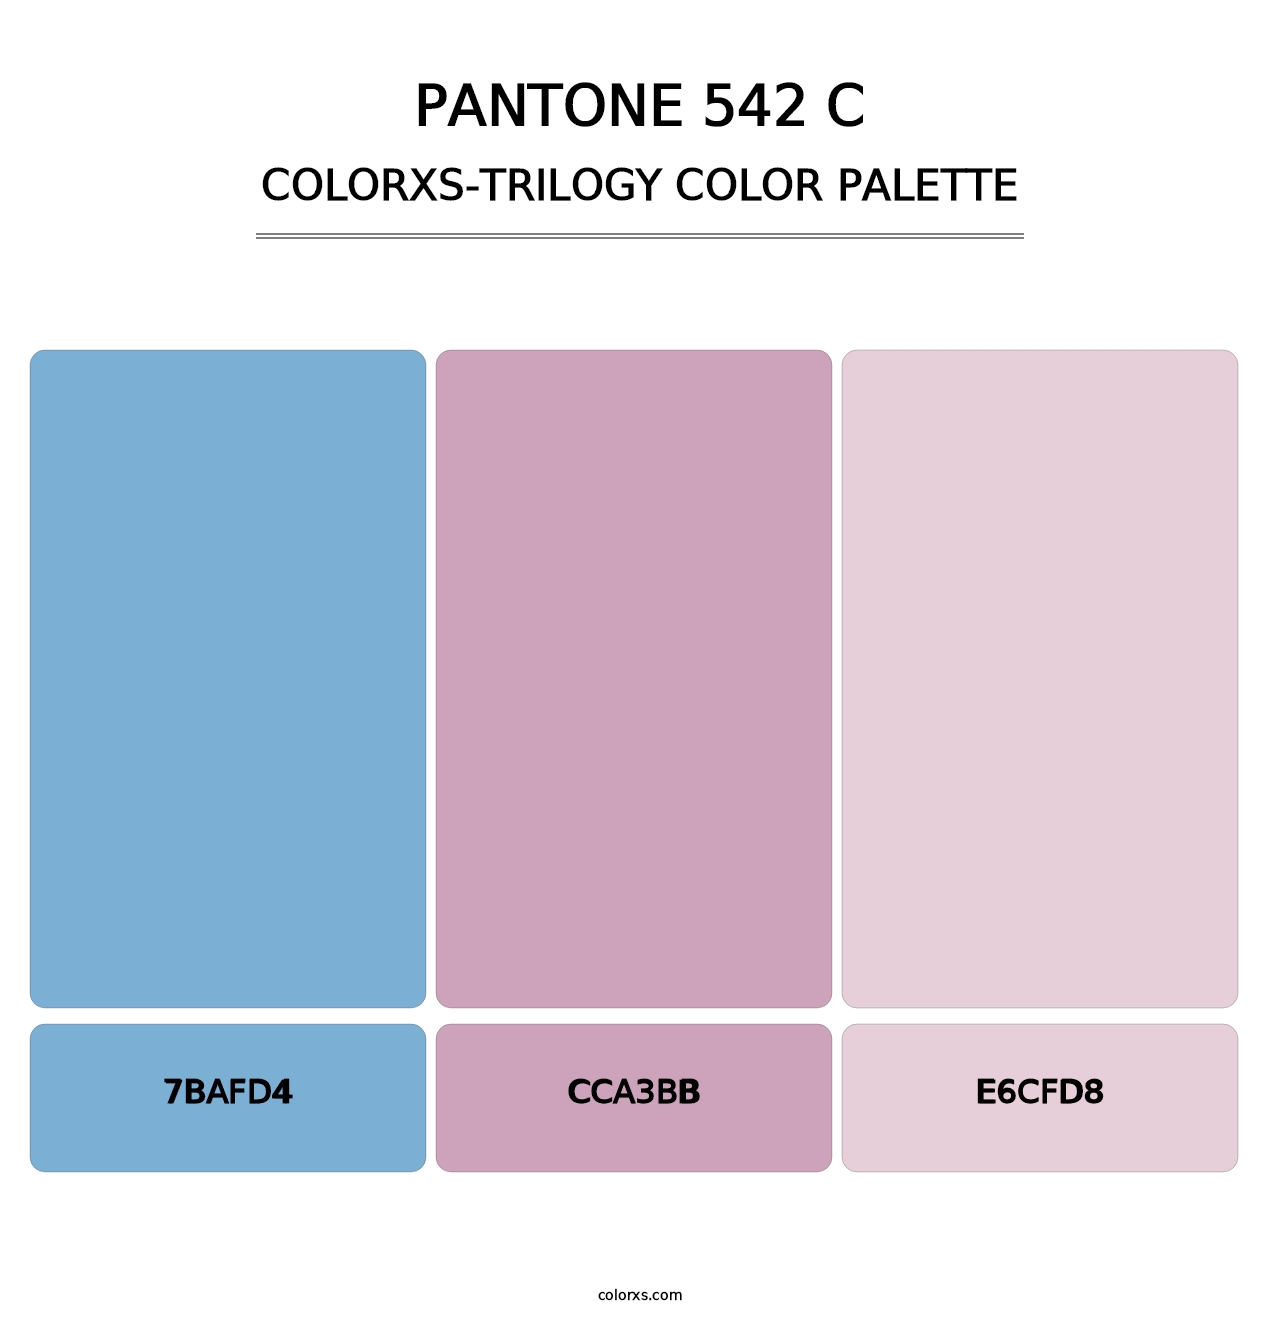 PANTONE 542 C - Colorxs Trilogy Palette